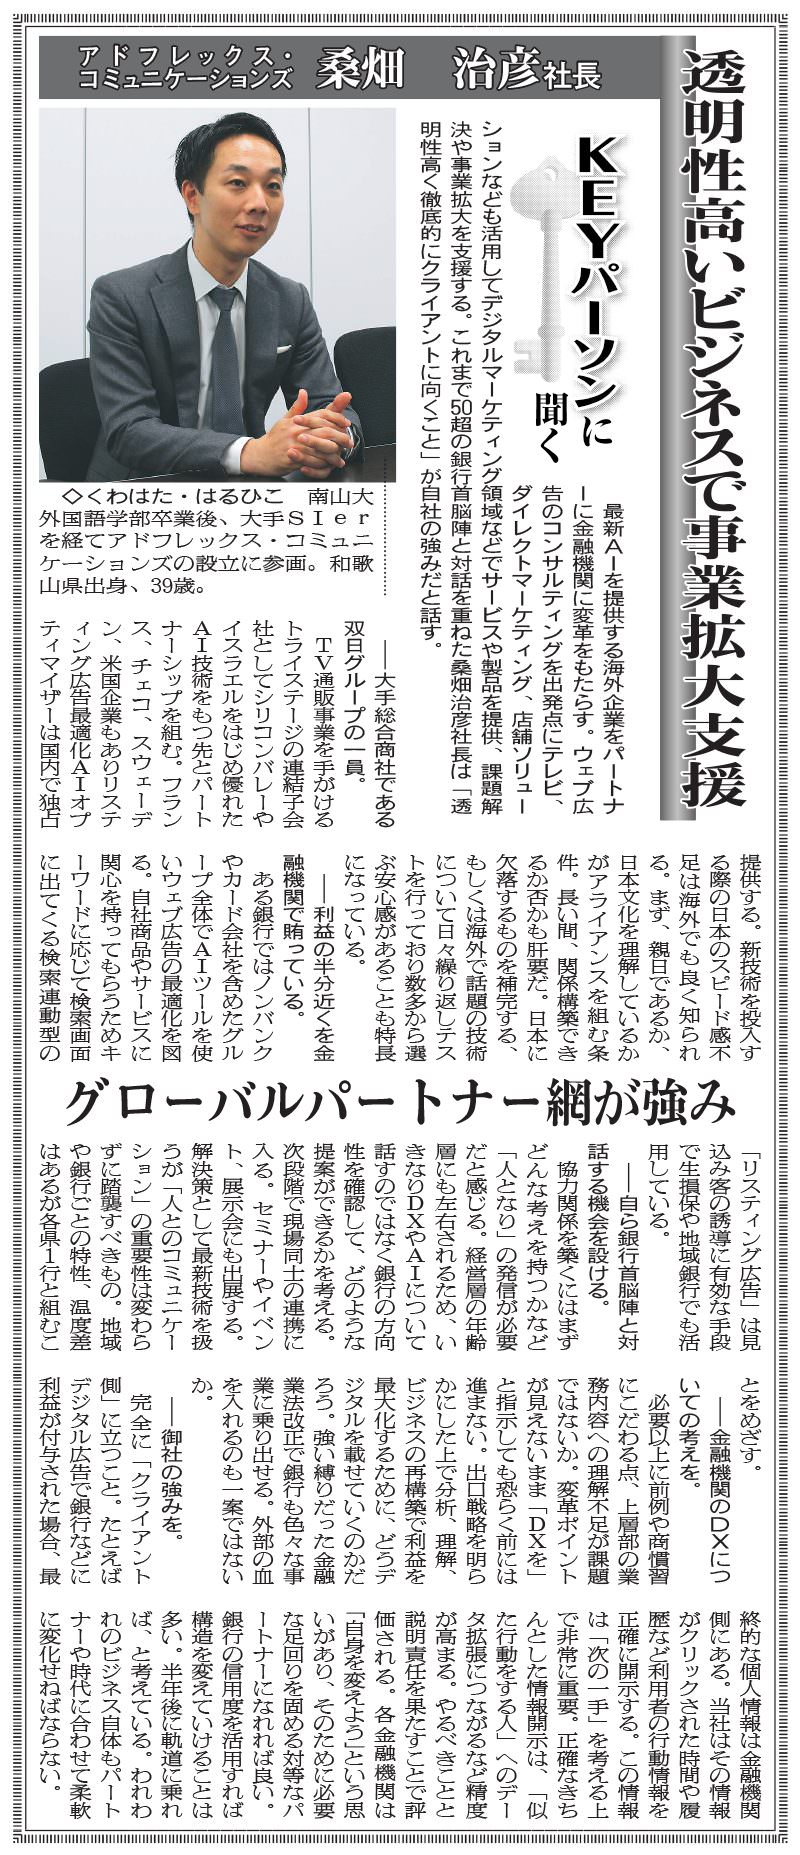 【メディア掲載】「金融経済新聞」に当社代表桑畑のインタビュー記事が掲載されました